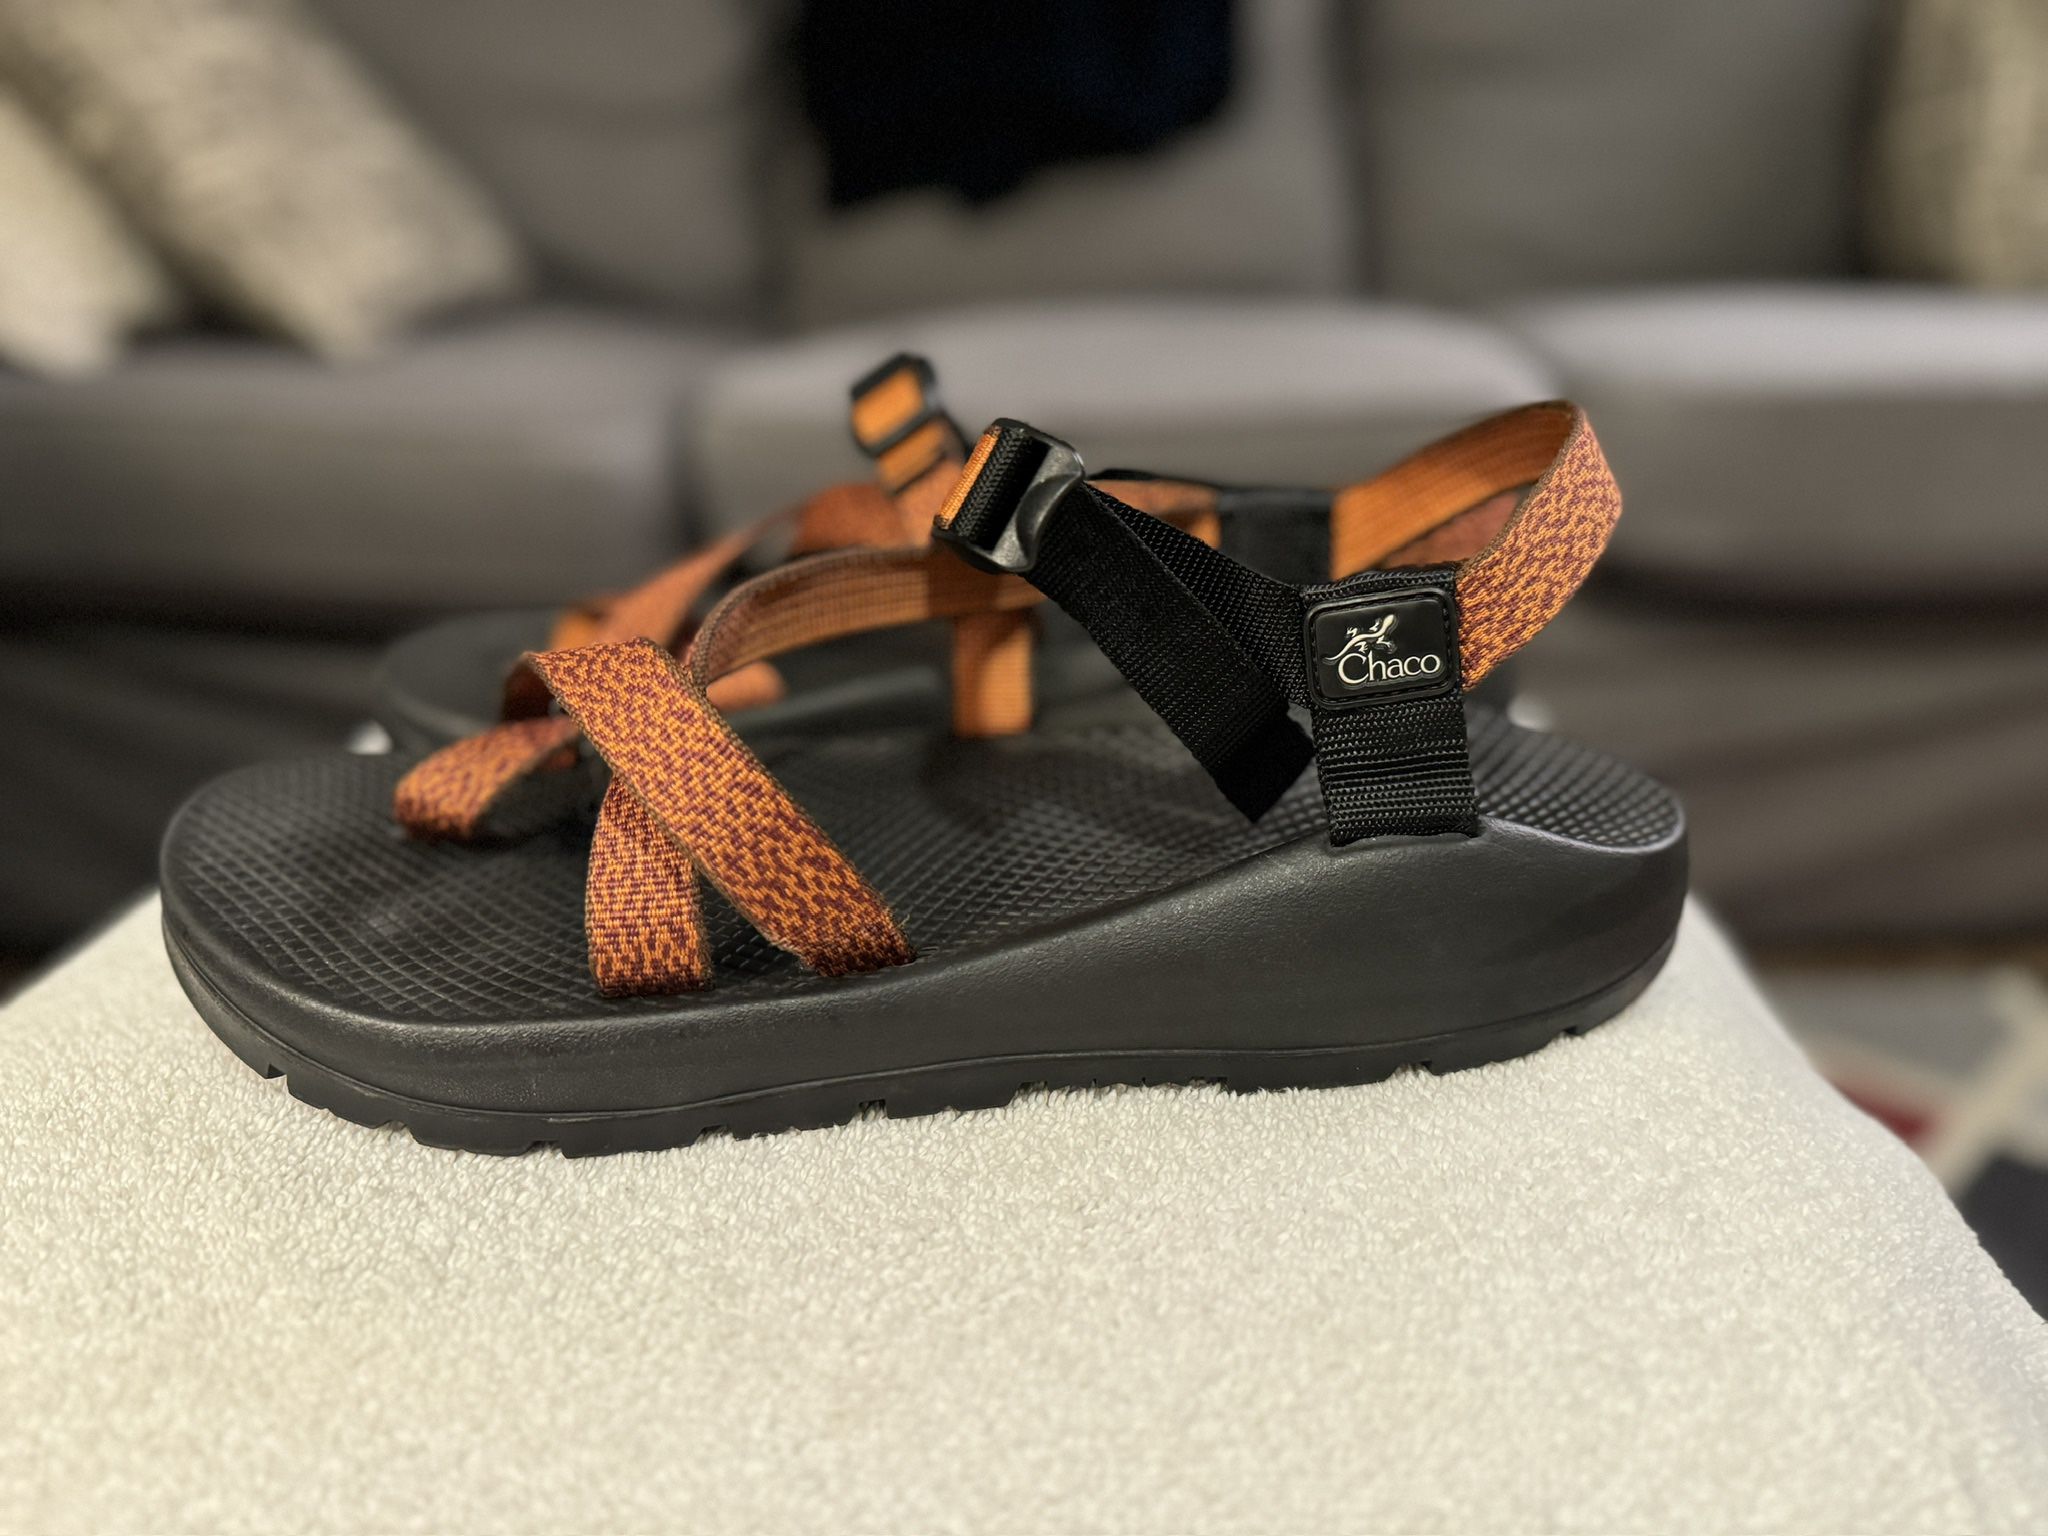 Chaco Men’s Z/2 Sandal Size 12